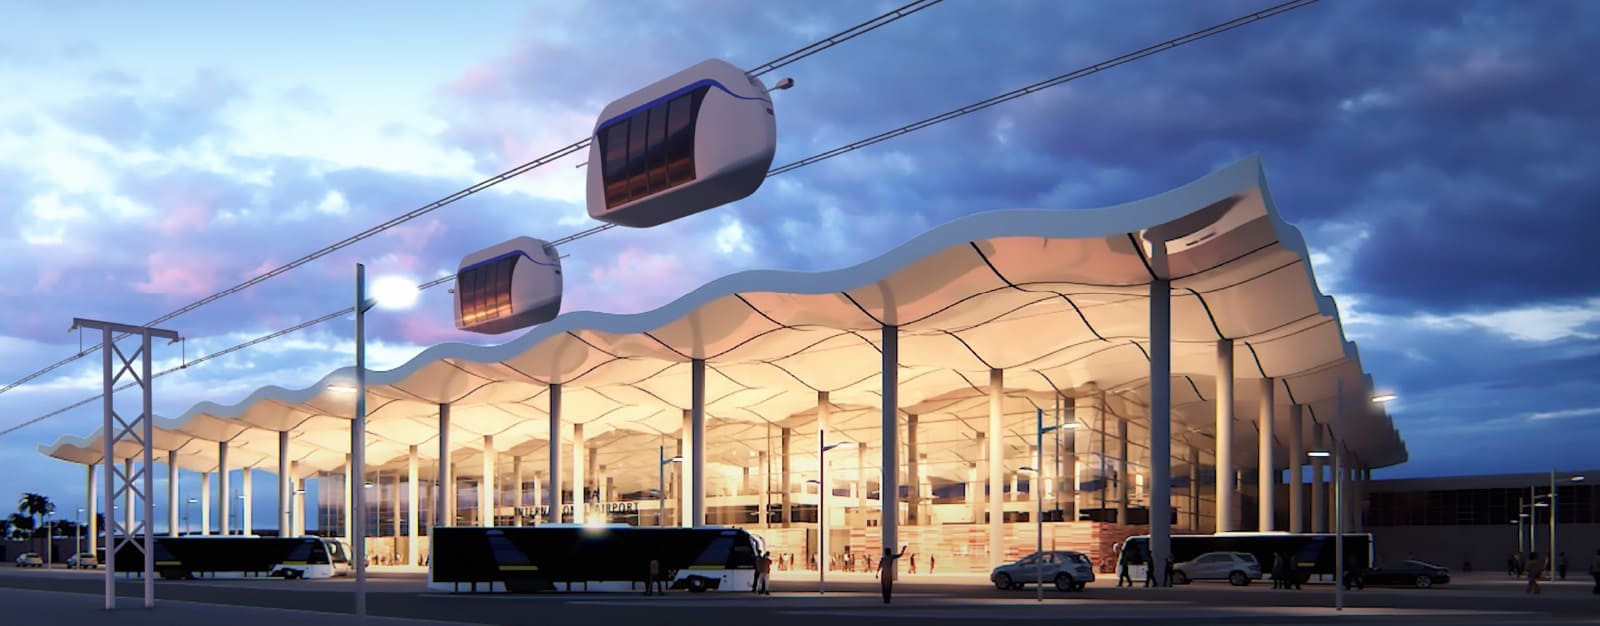 uSky Transport предлагает проекты общественного транспорта для Руанды 1